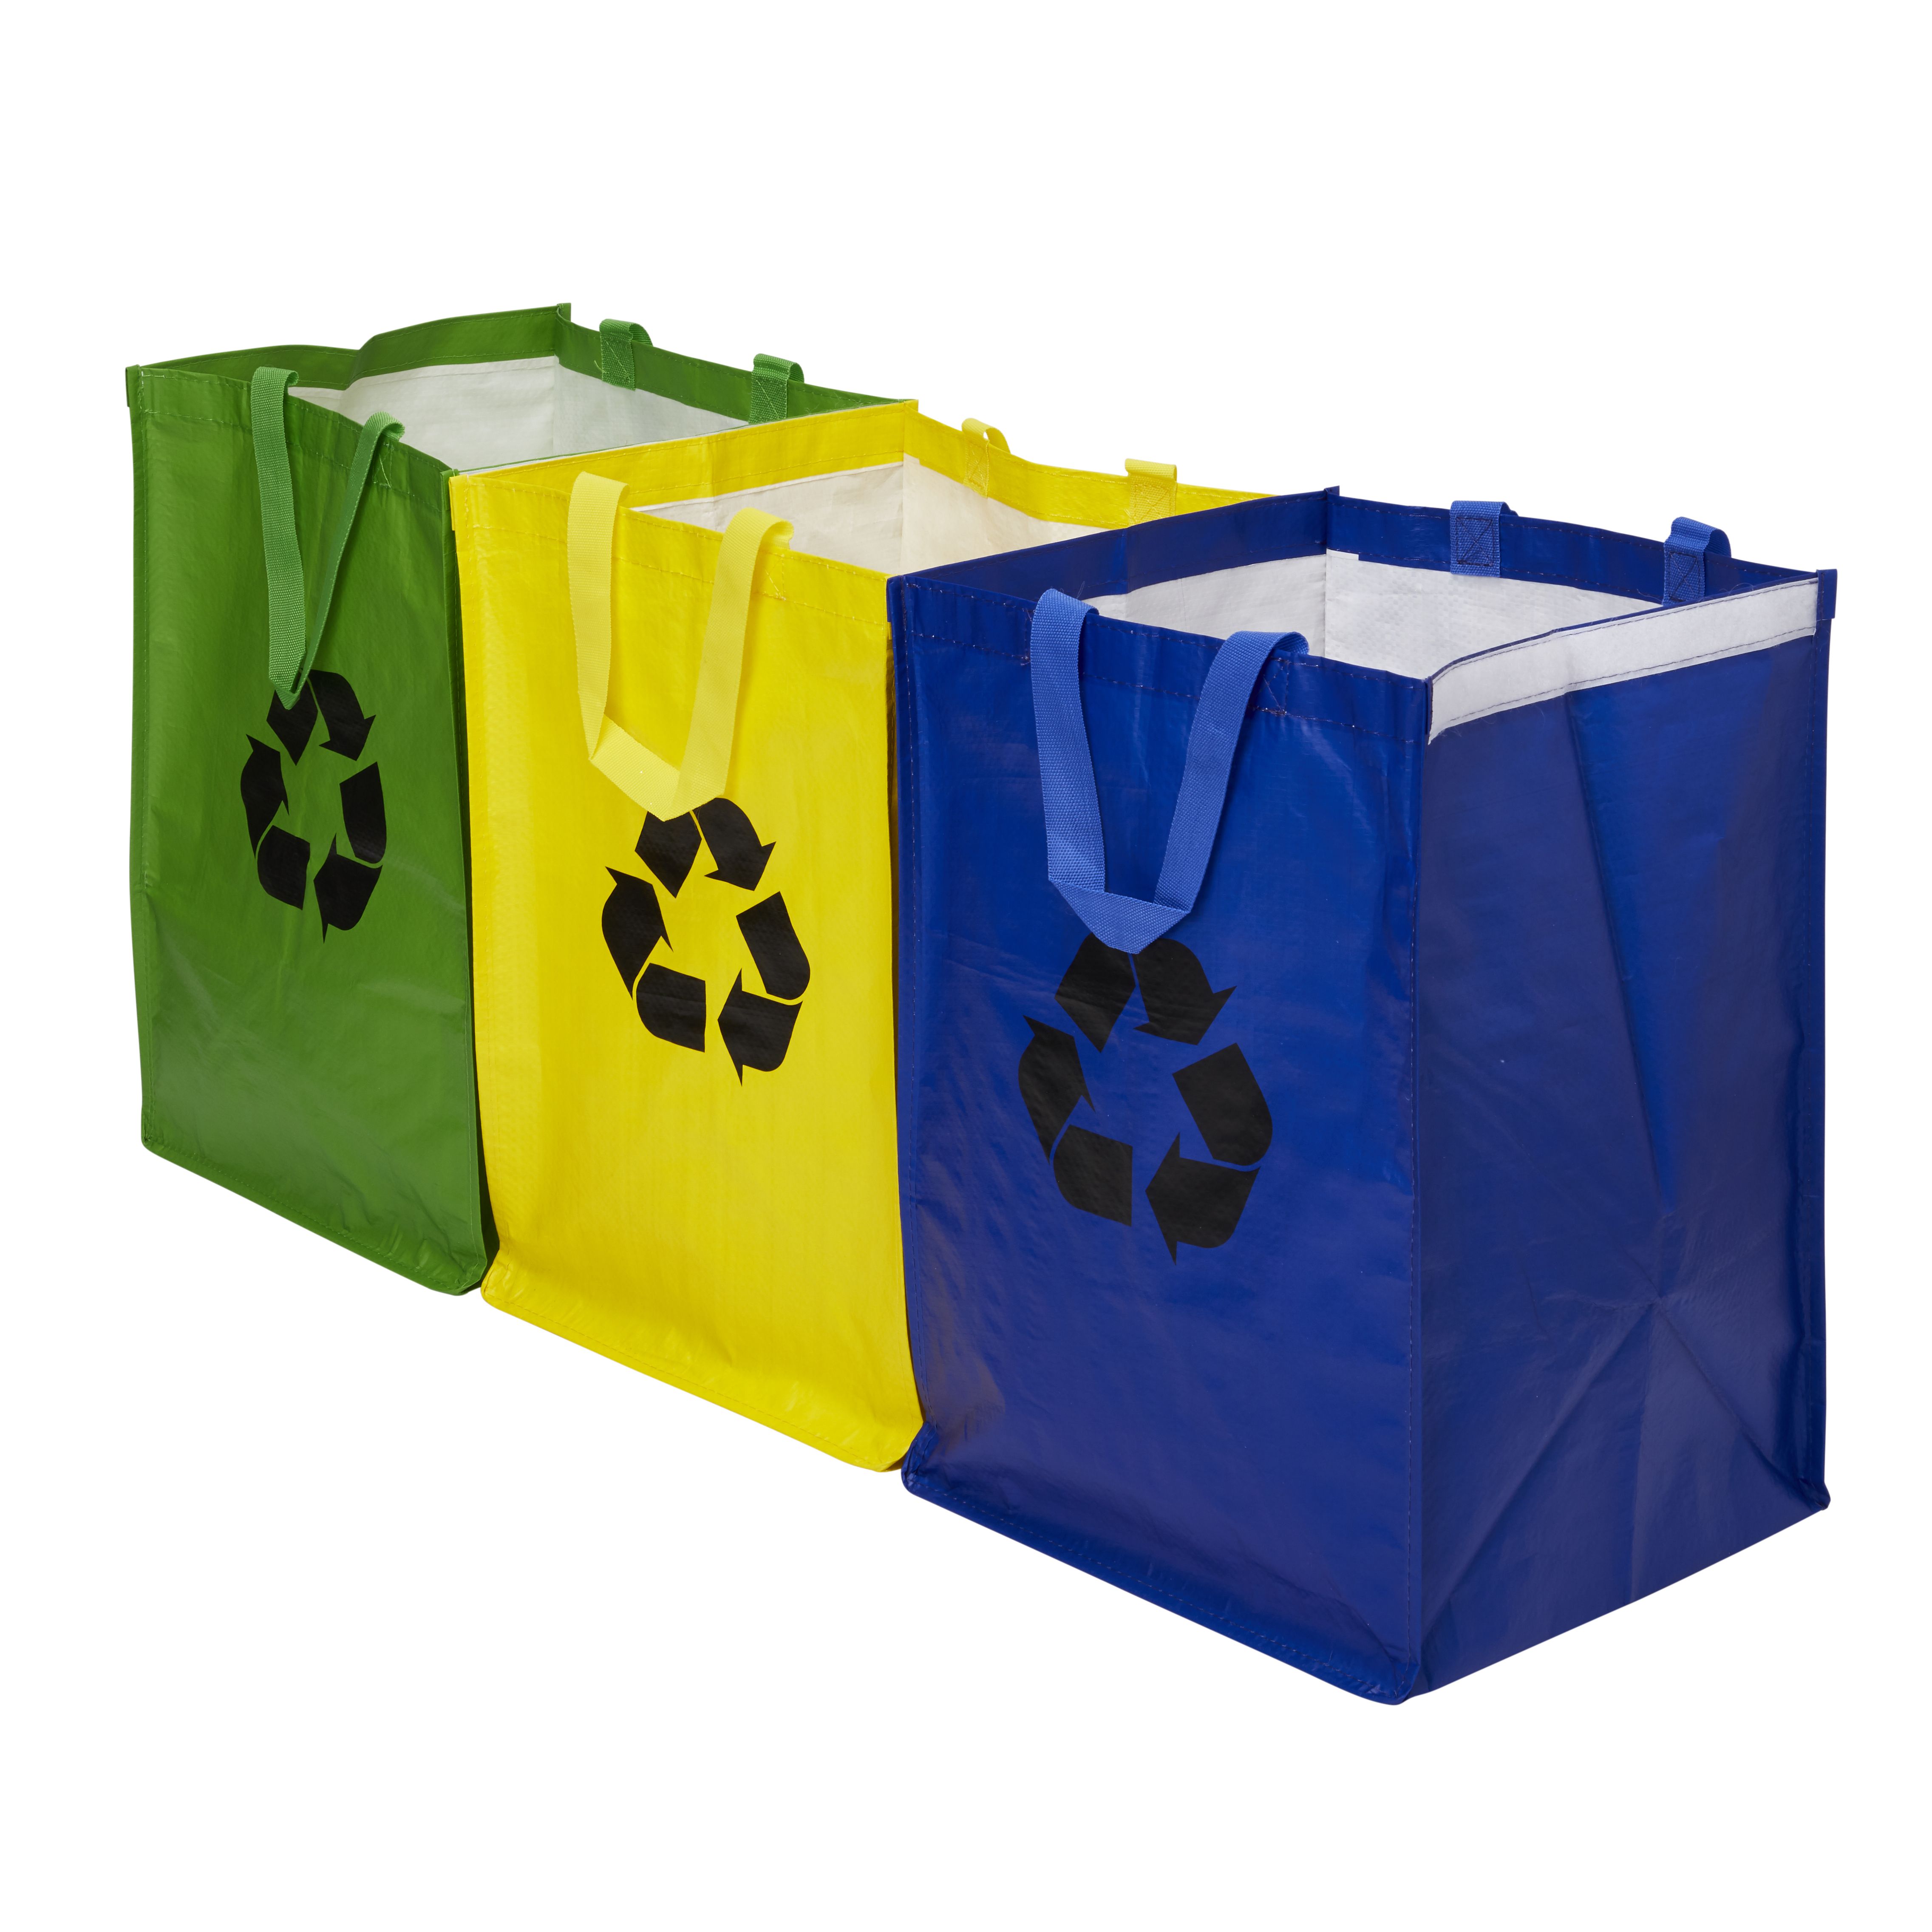 Recycling Bag Set Of 3~3663602565161 02bq?$MOB PREV$&$width=768&$height=768